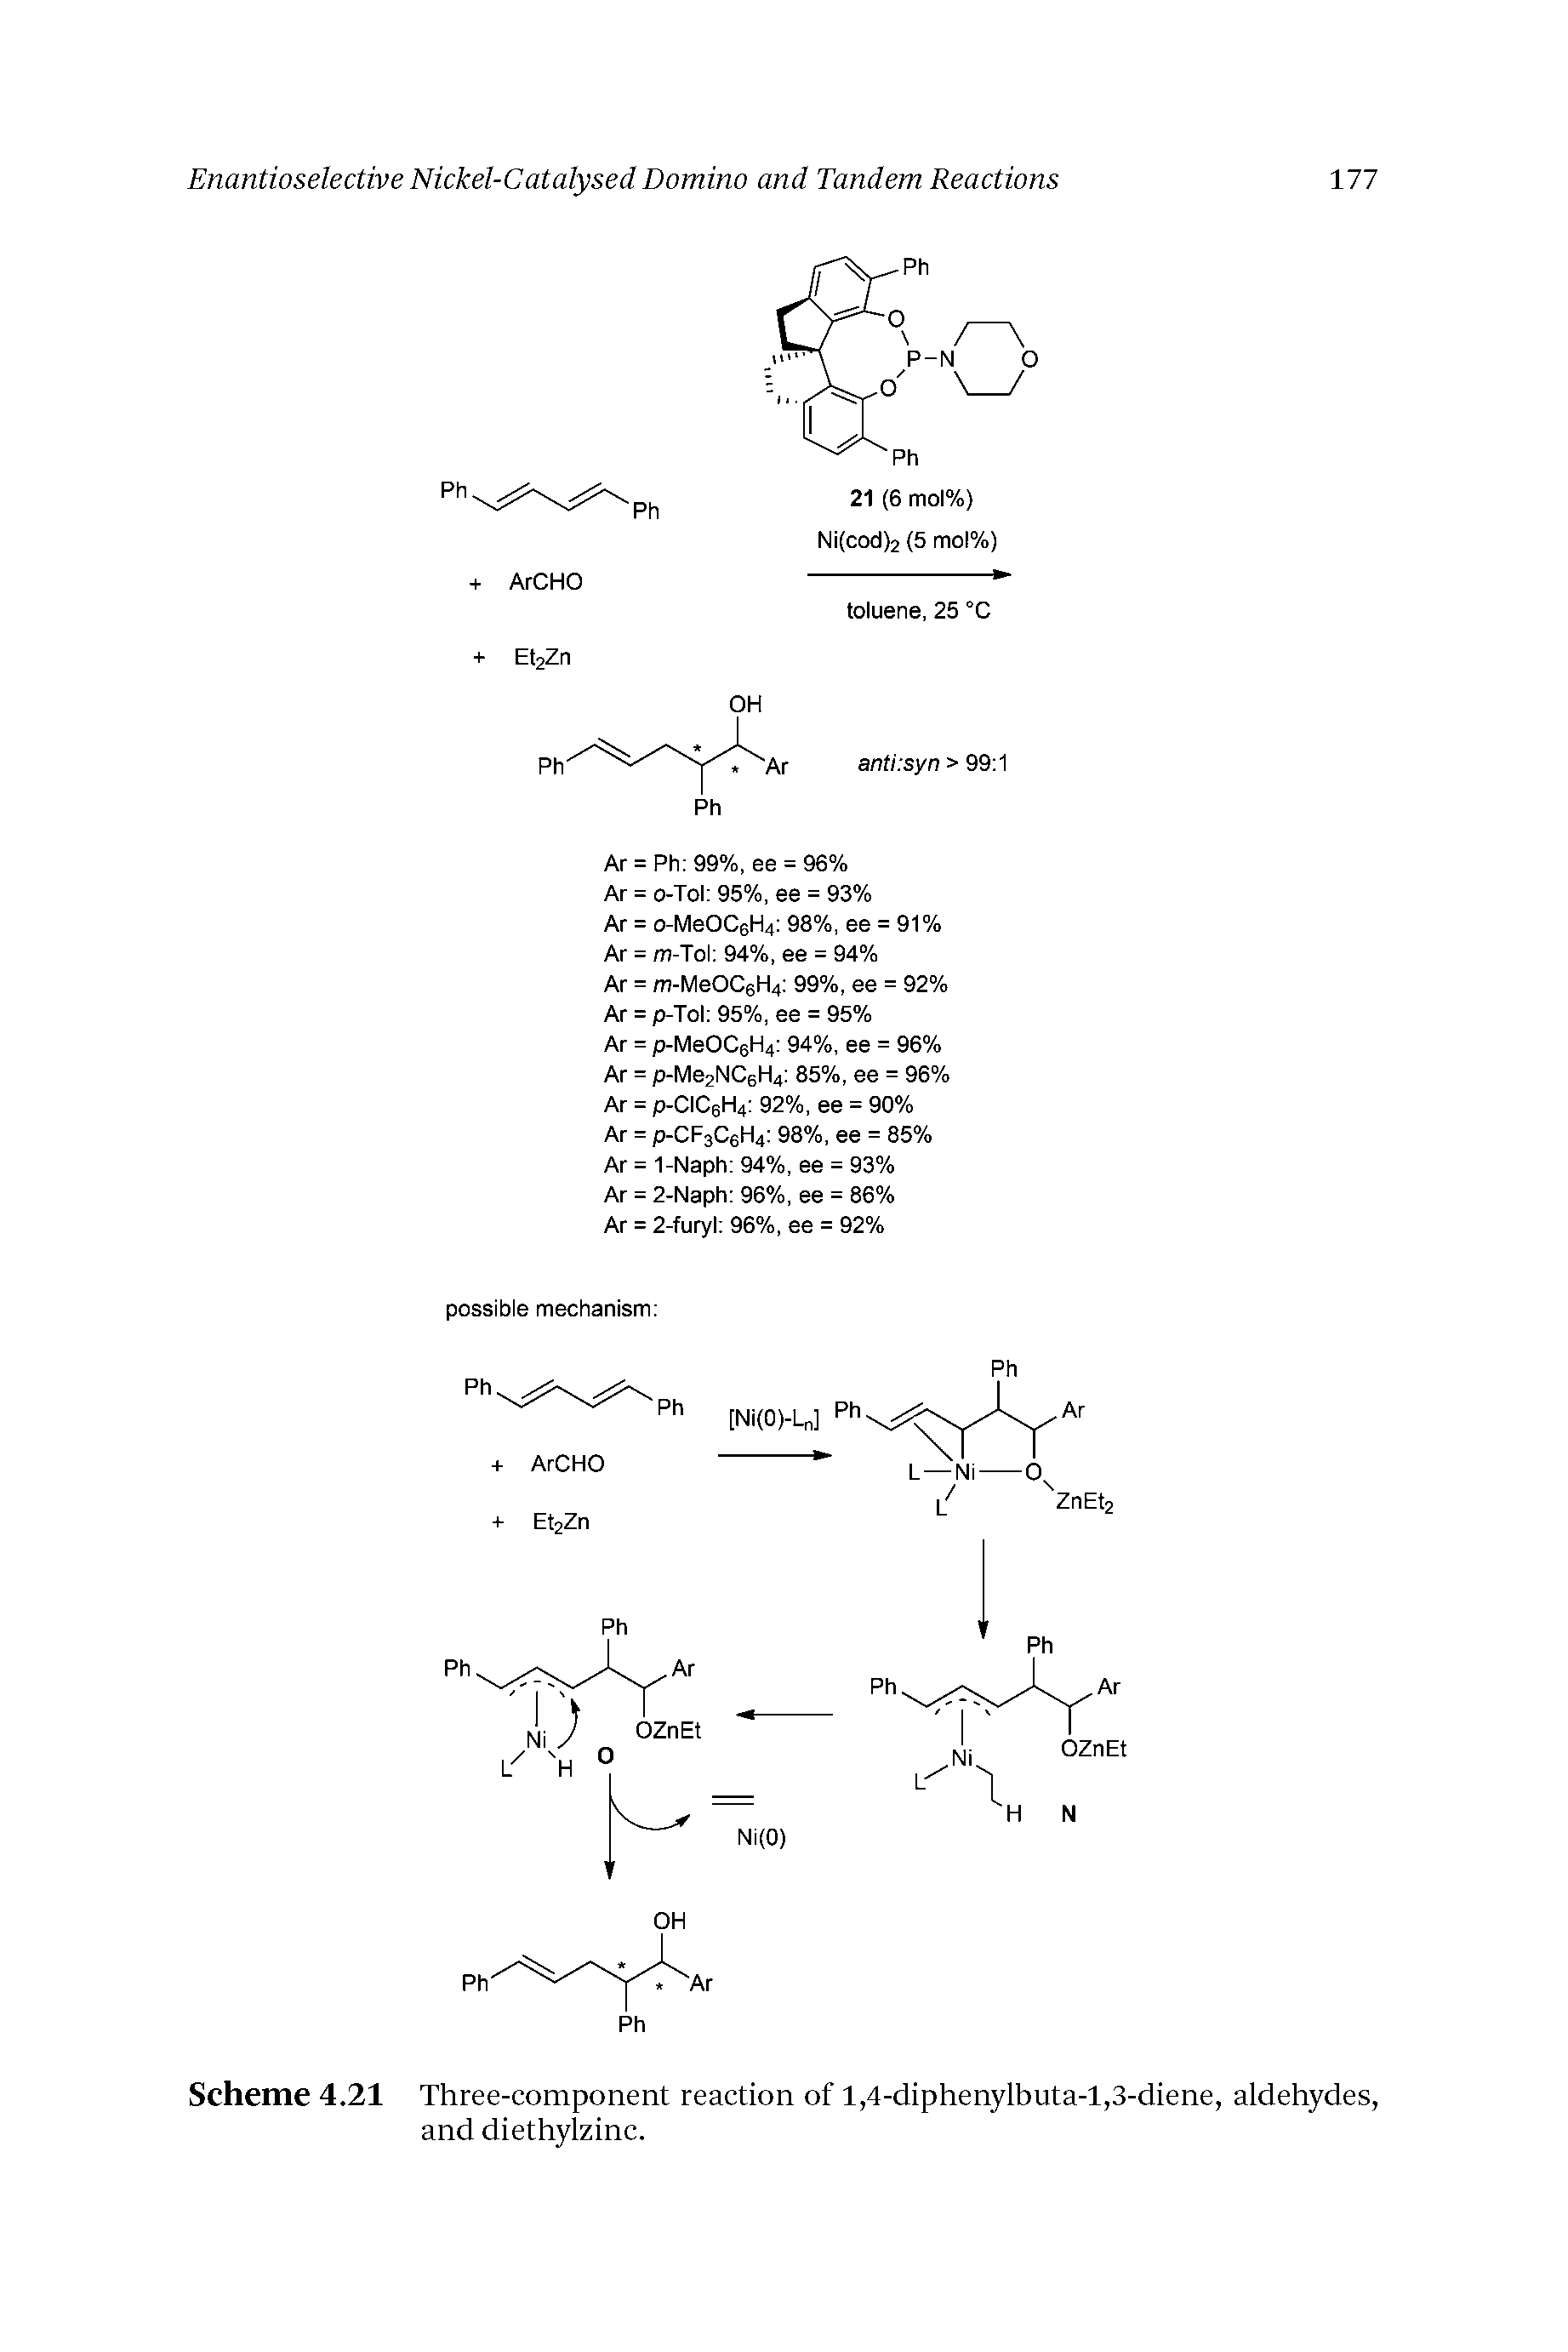 Scheme 4.21 Three-component reaction of 1,4-diphenylbuta-l,3-diene, aldehydes, and diethylzinc.